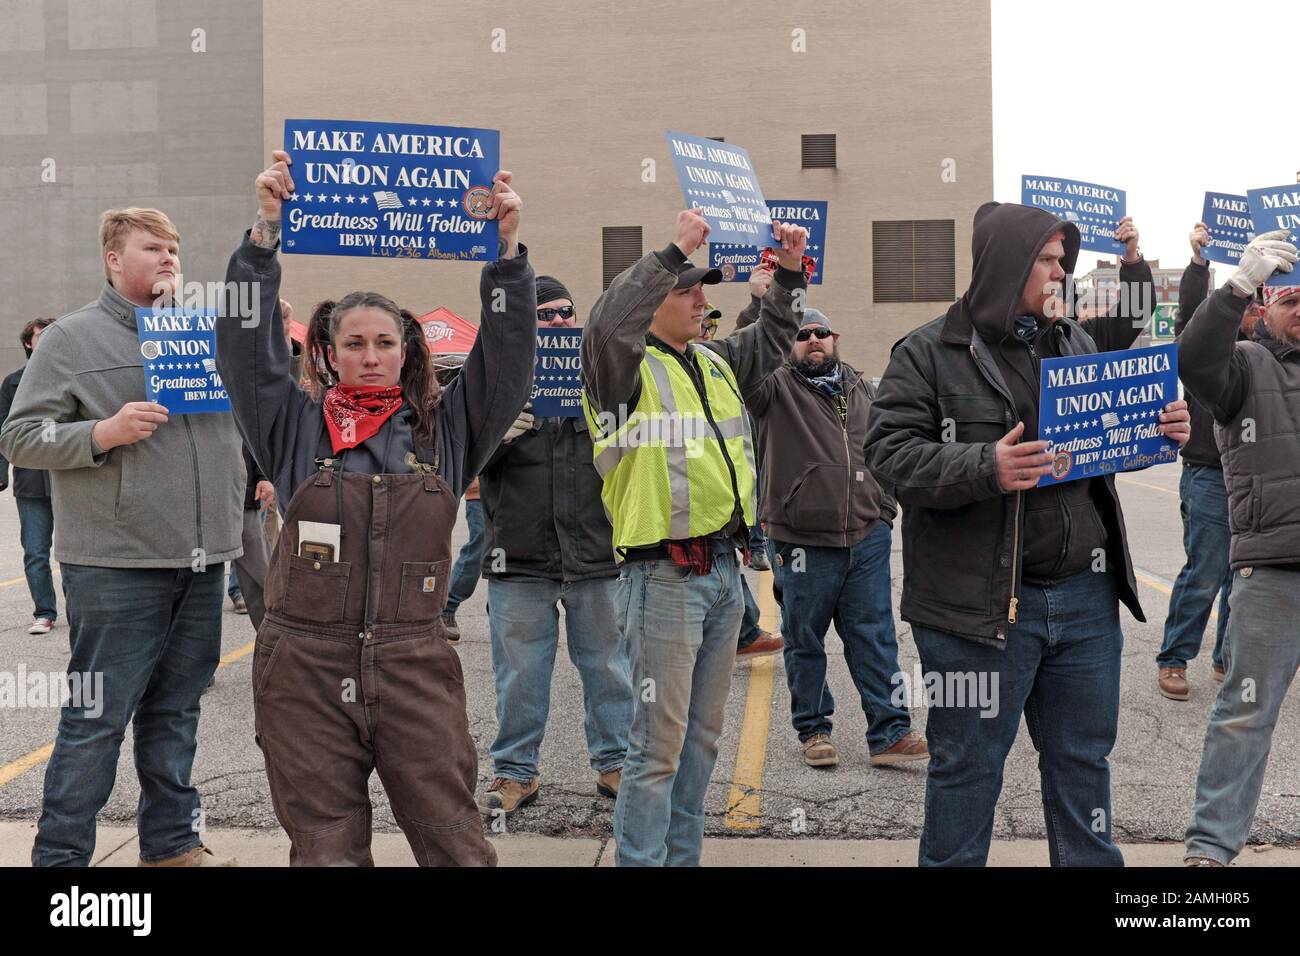 Manifestación de trabajadores Pro-Union Trump durante su visita a Toledo, Ohio, EE.UU. el 9 de enero de 2020 para una campaña Re-Election Trump 2020 evento. Foto de stock